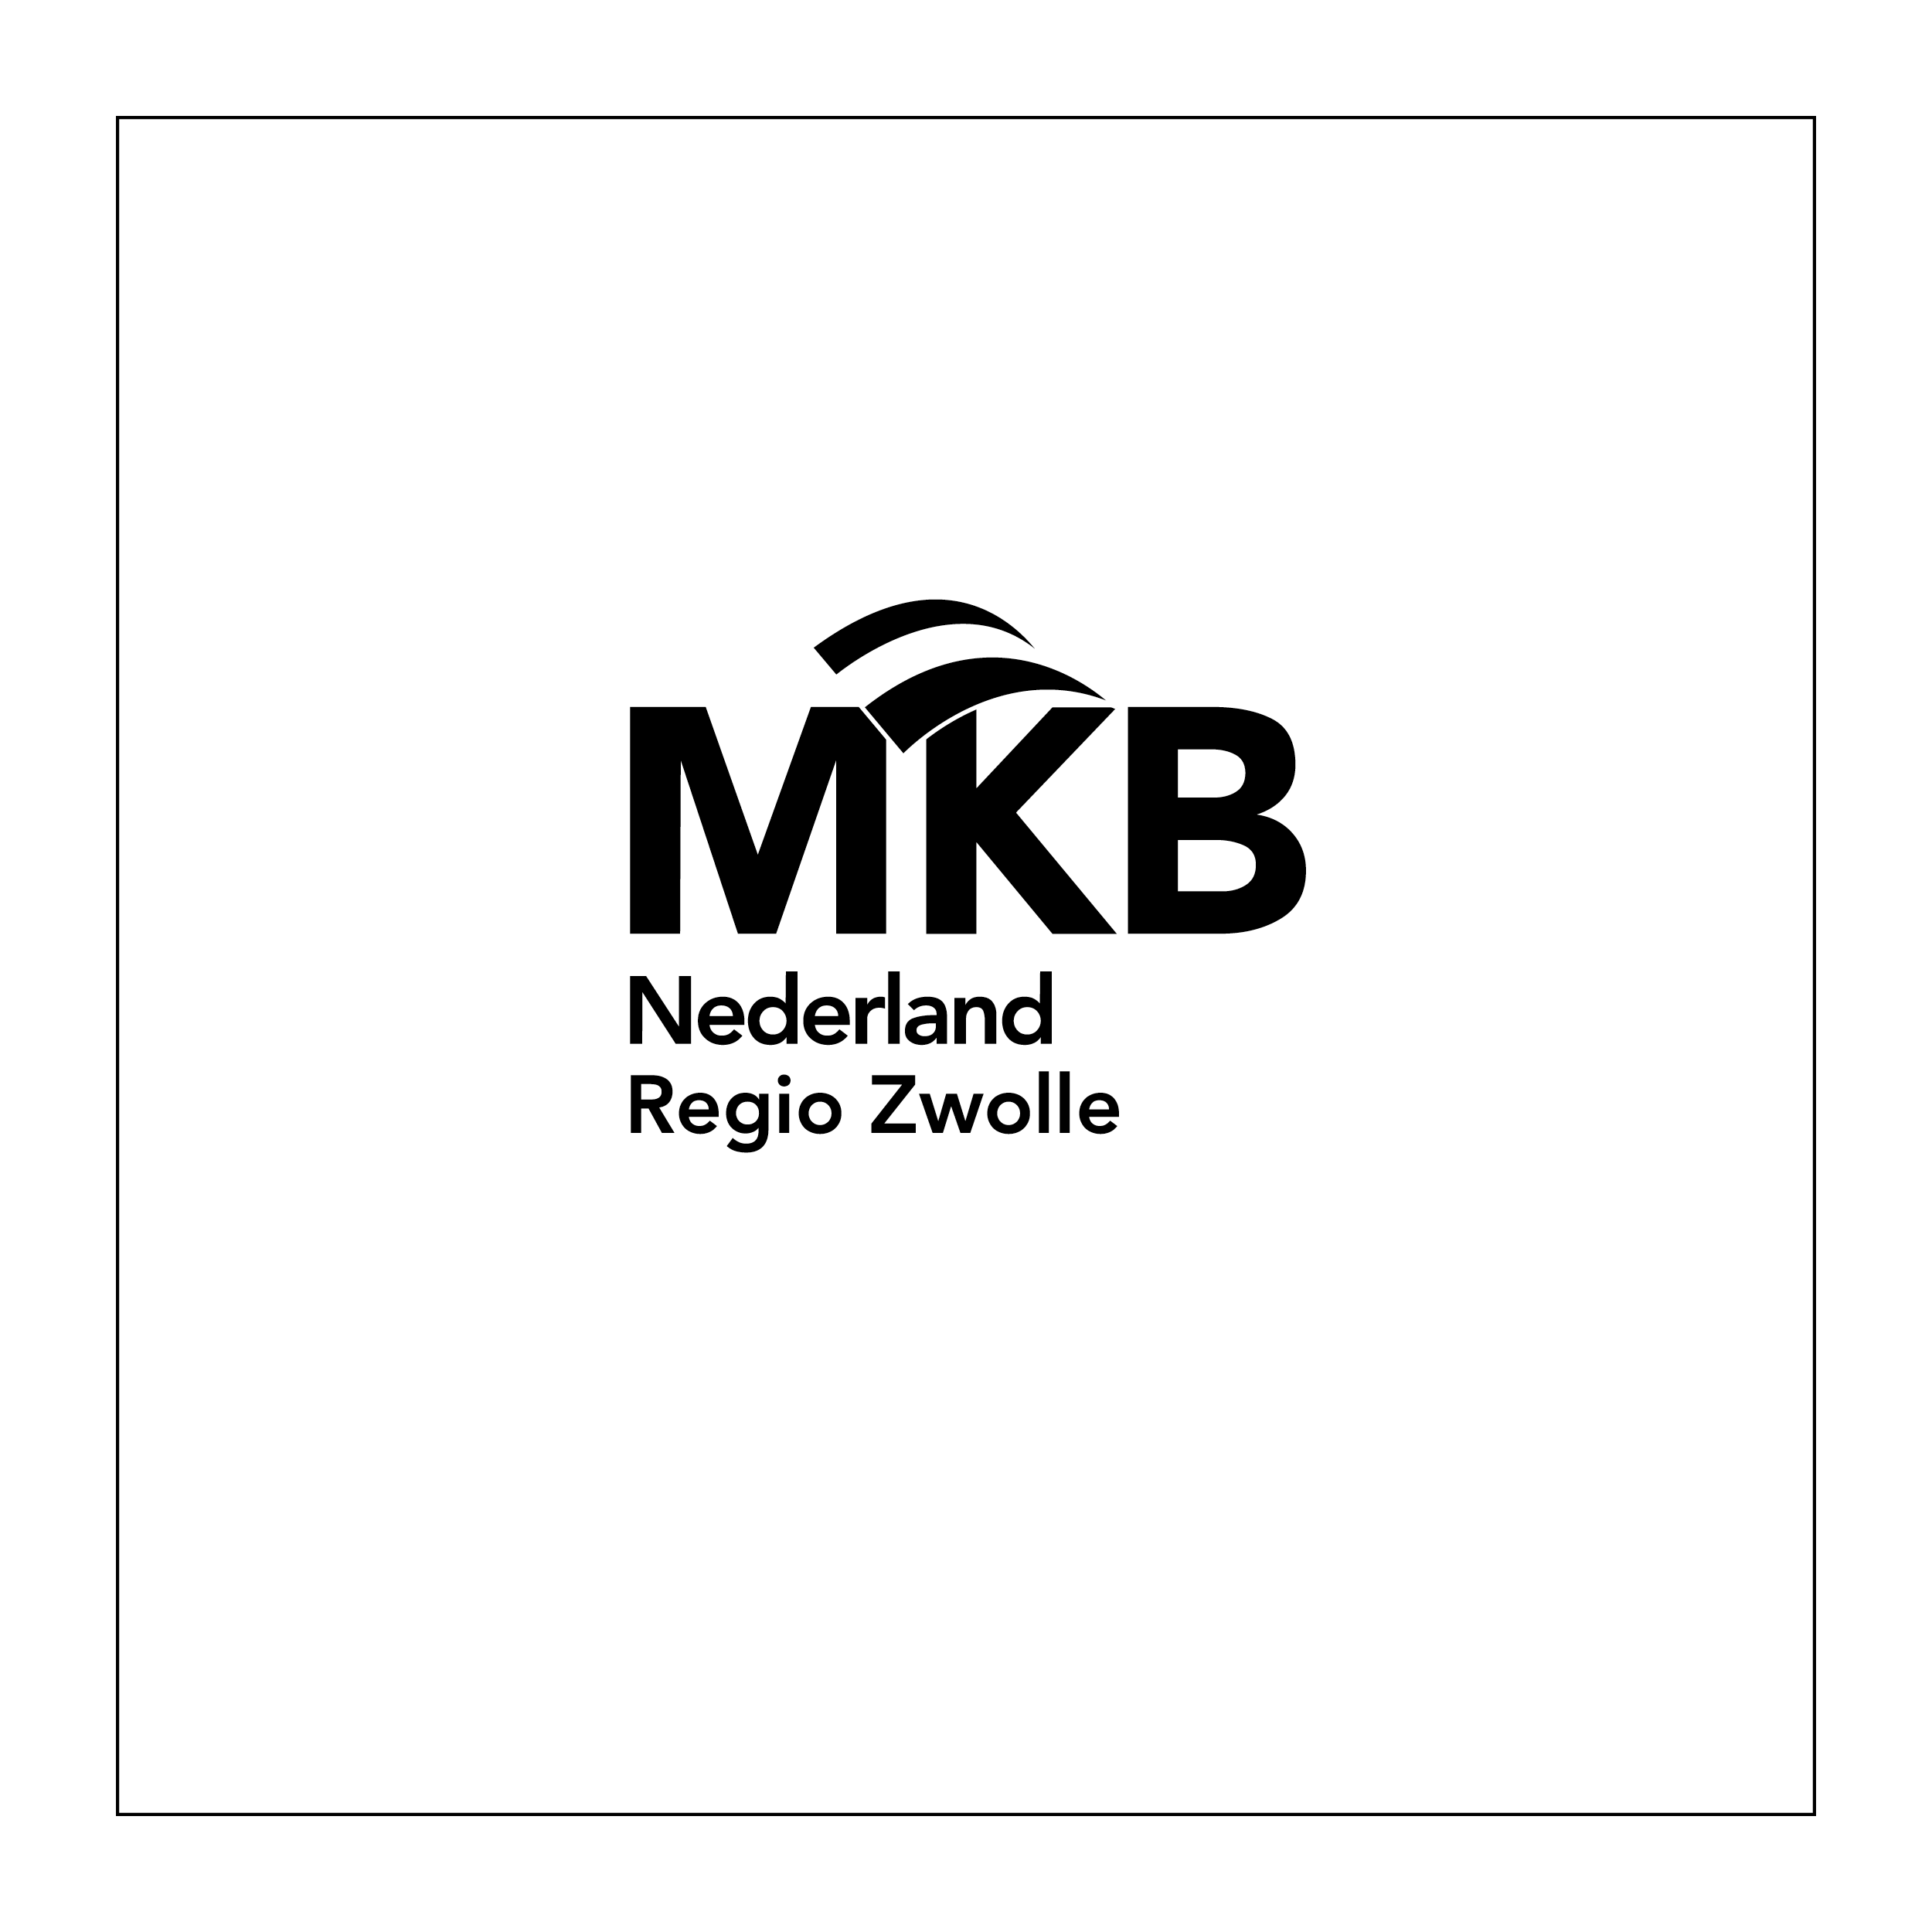 mkb regio zwolle